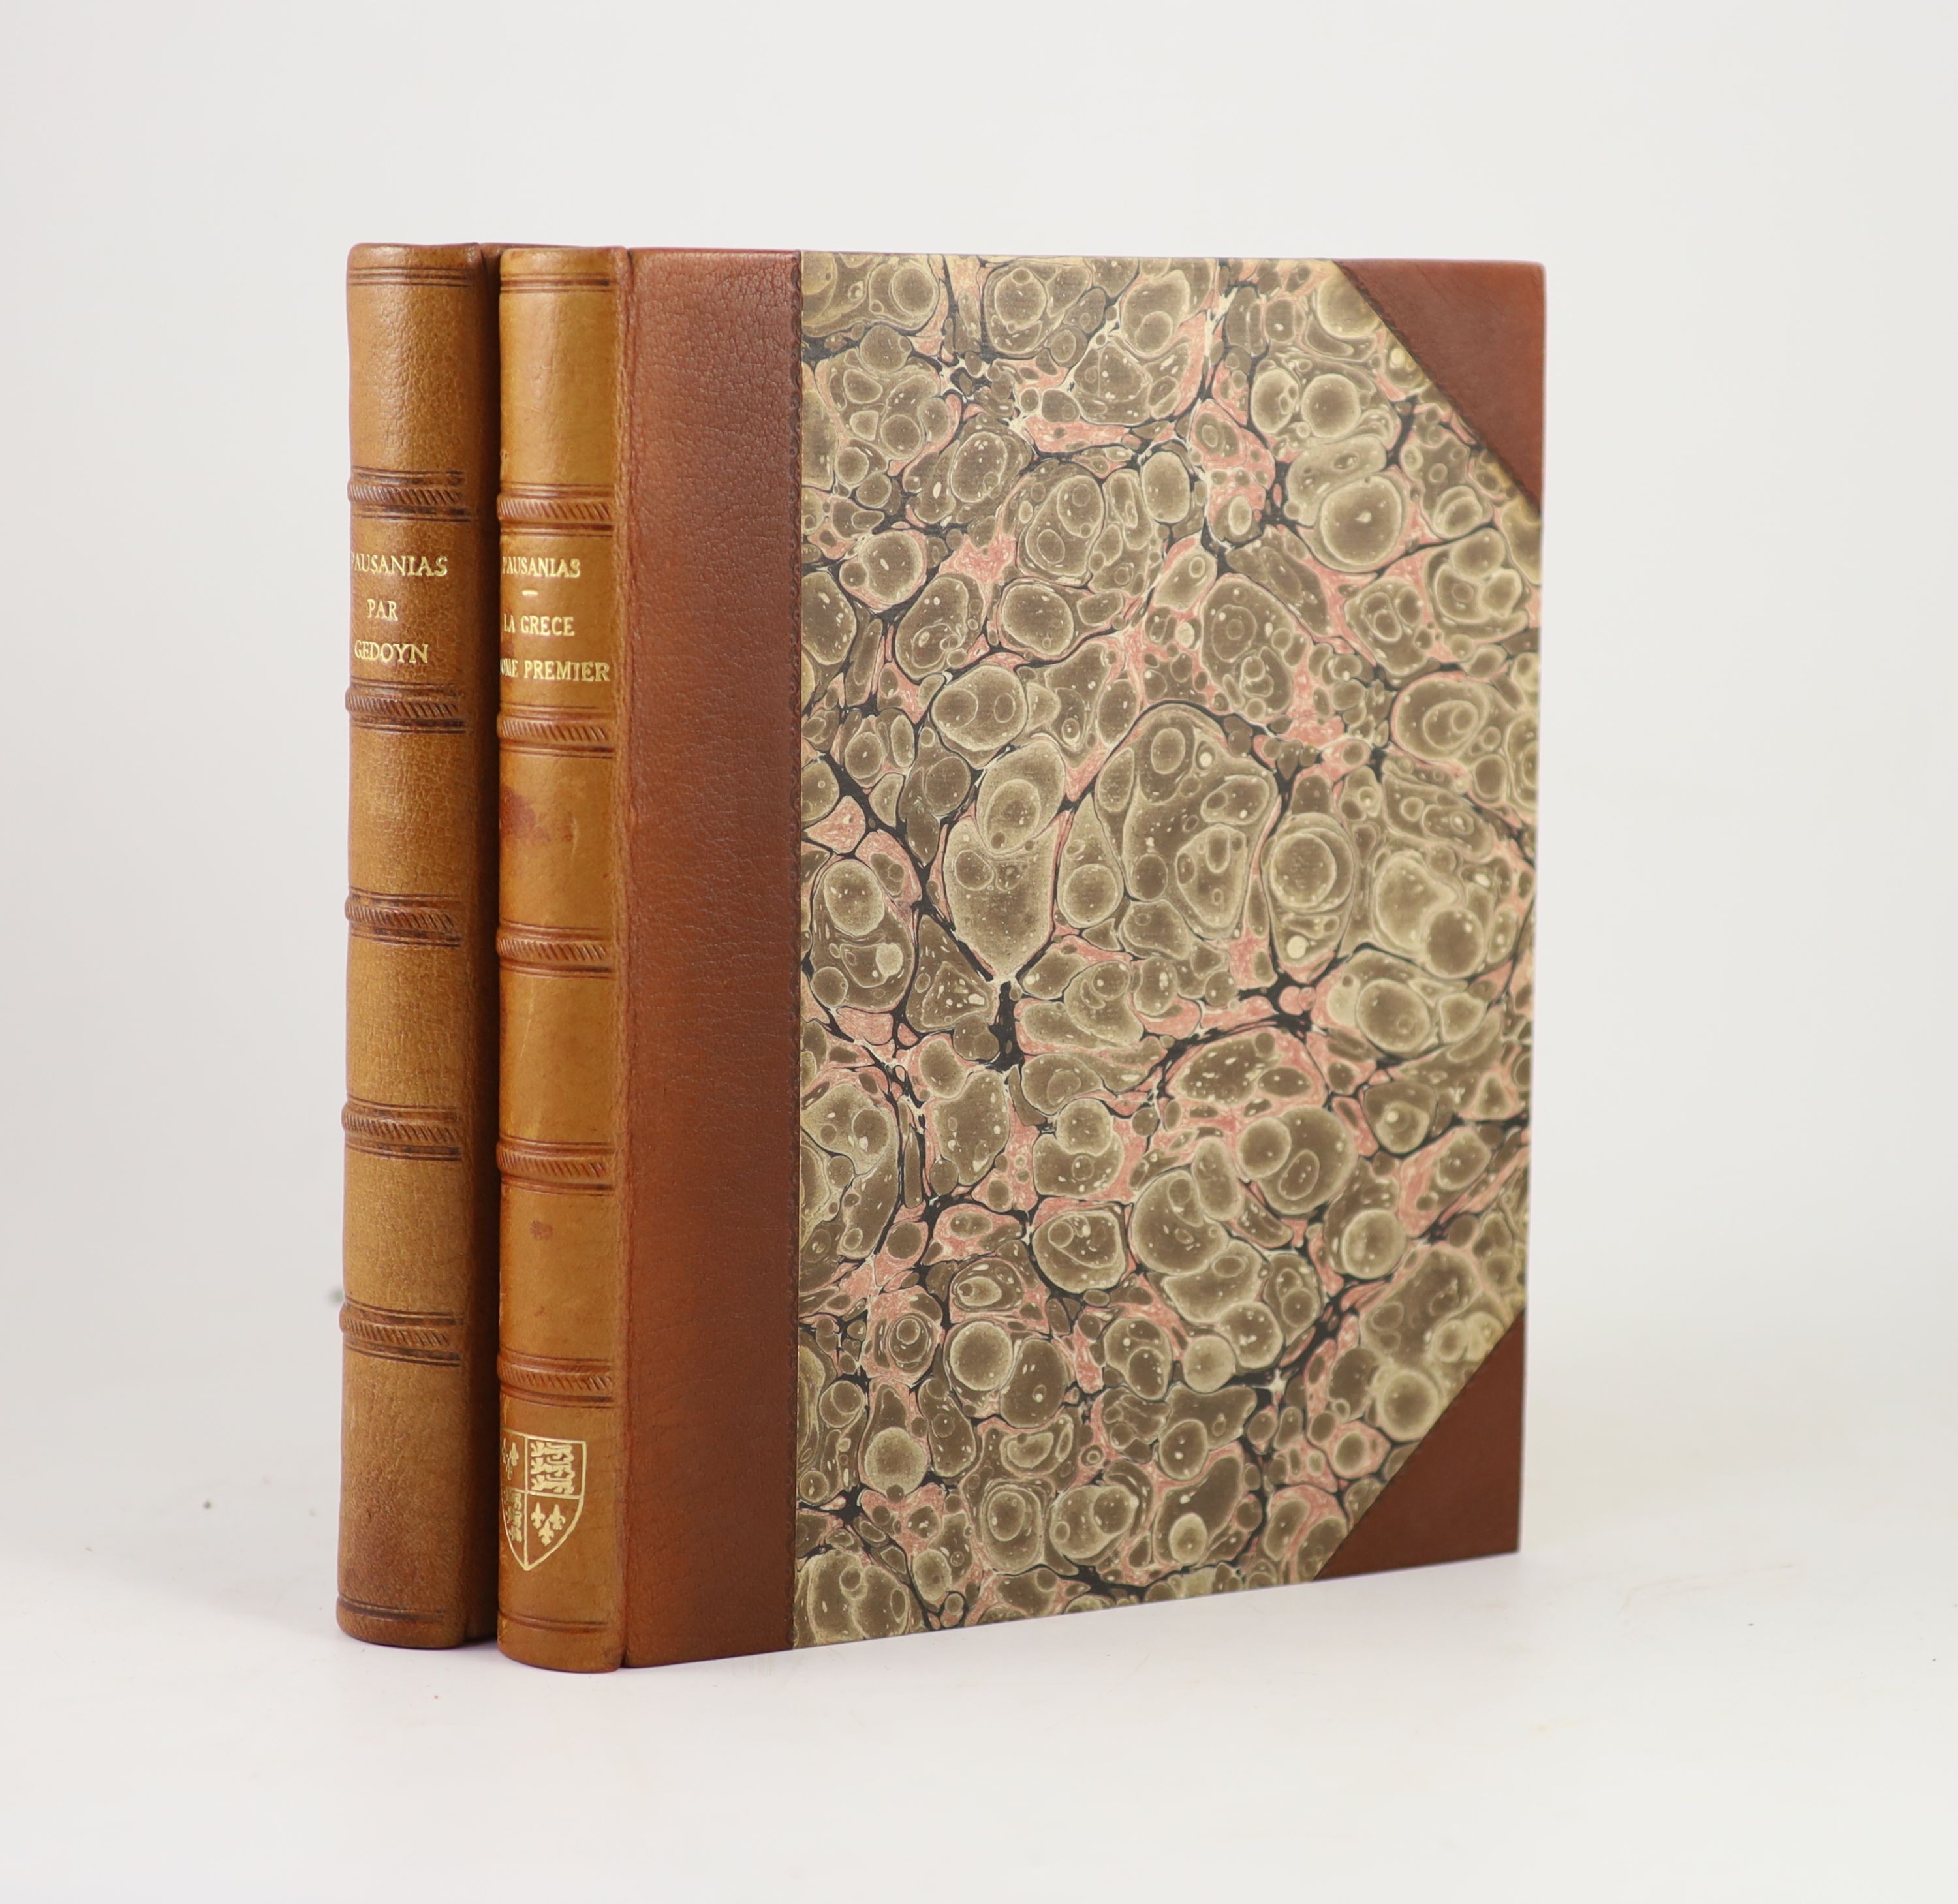 Gedoyn, M. Abbe - Pausanias, ou Voyage de La Grece, traduit en Francais ... 2 vols. 3 folded maps and 5 engraved plates (3 folded), text vignettes (etc.); newly rebound tan half